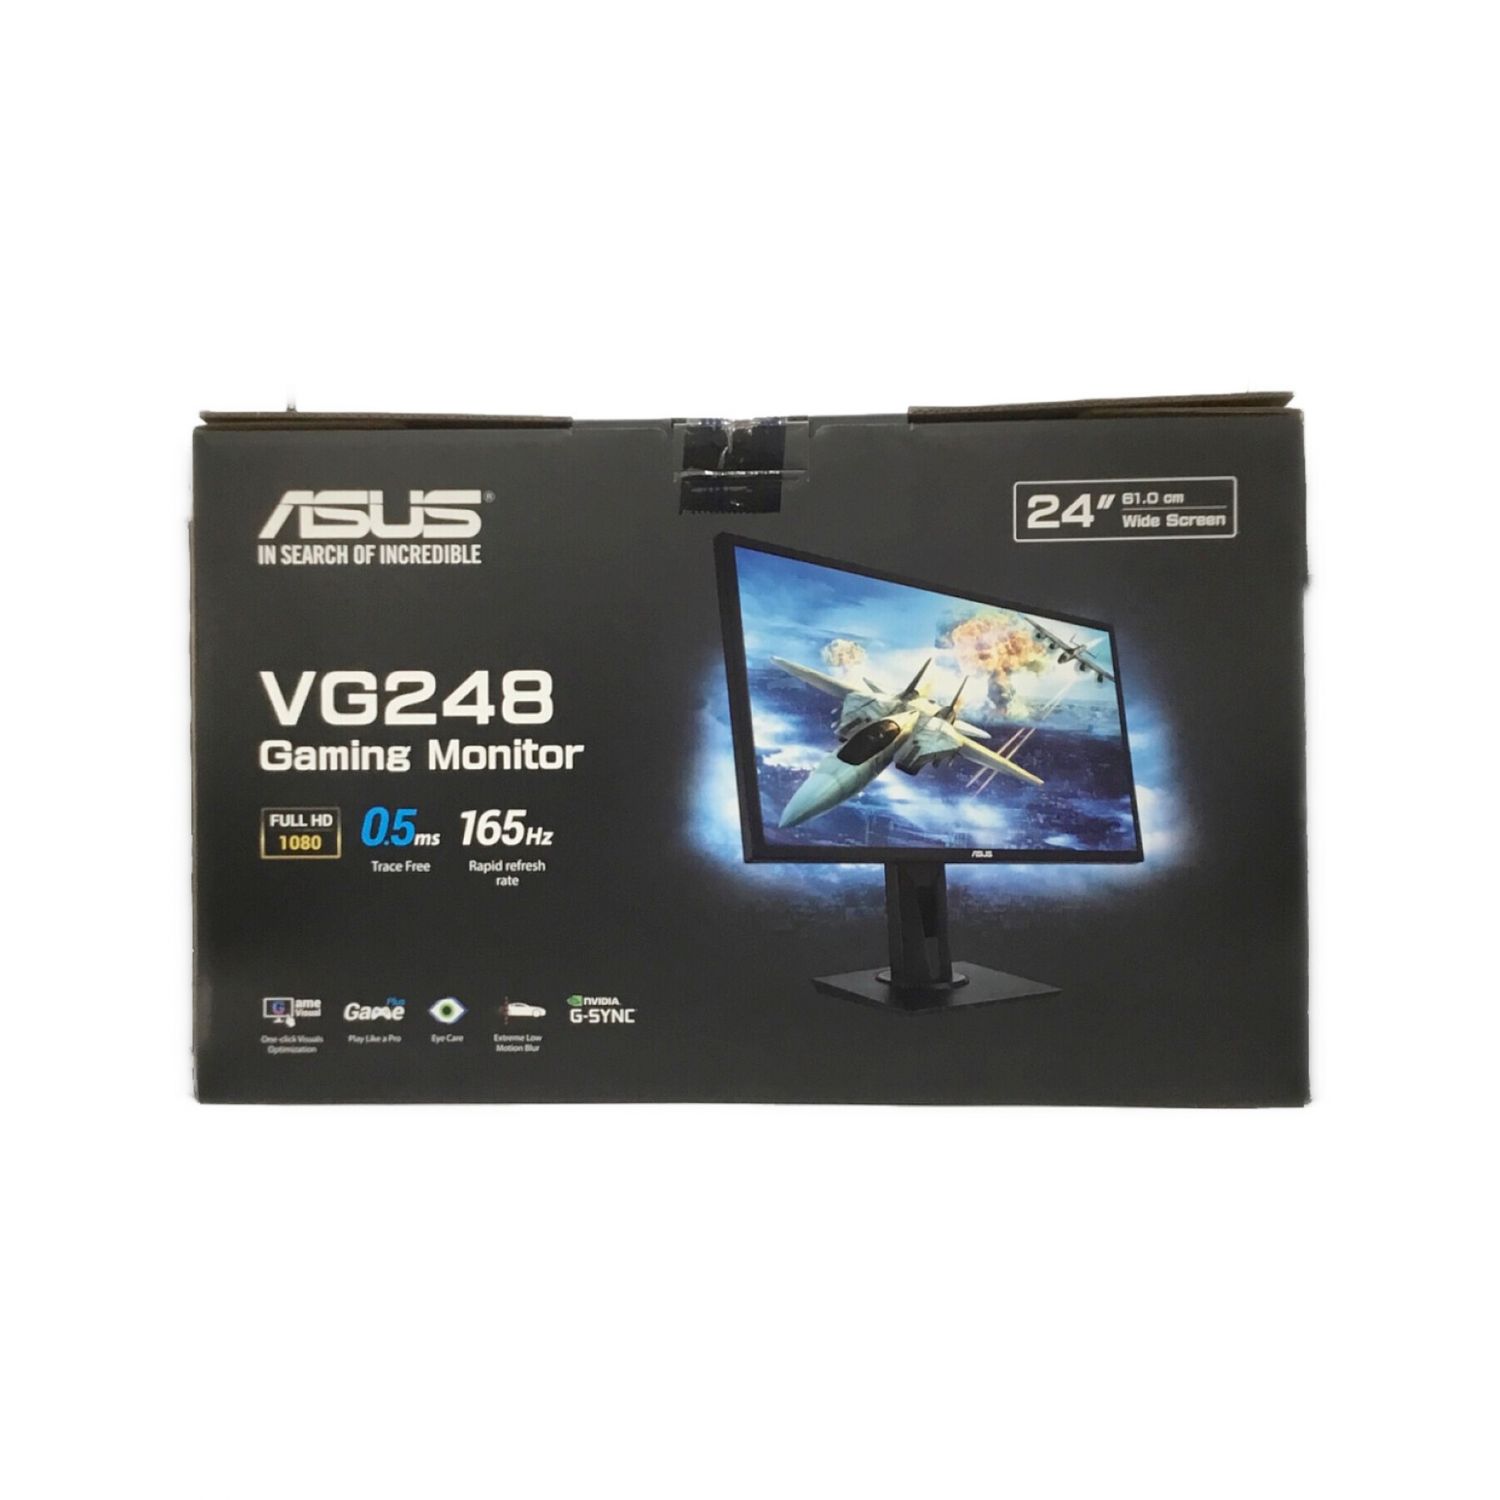 ASUS ゲーミングモニター 引っ越しの為27日まで VP248 LCD ヘッド